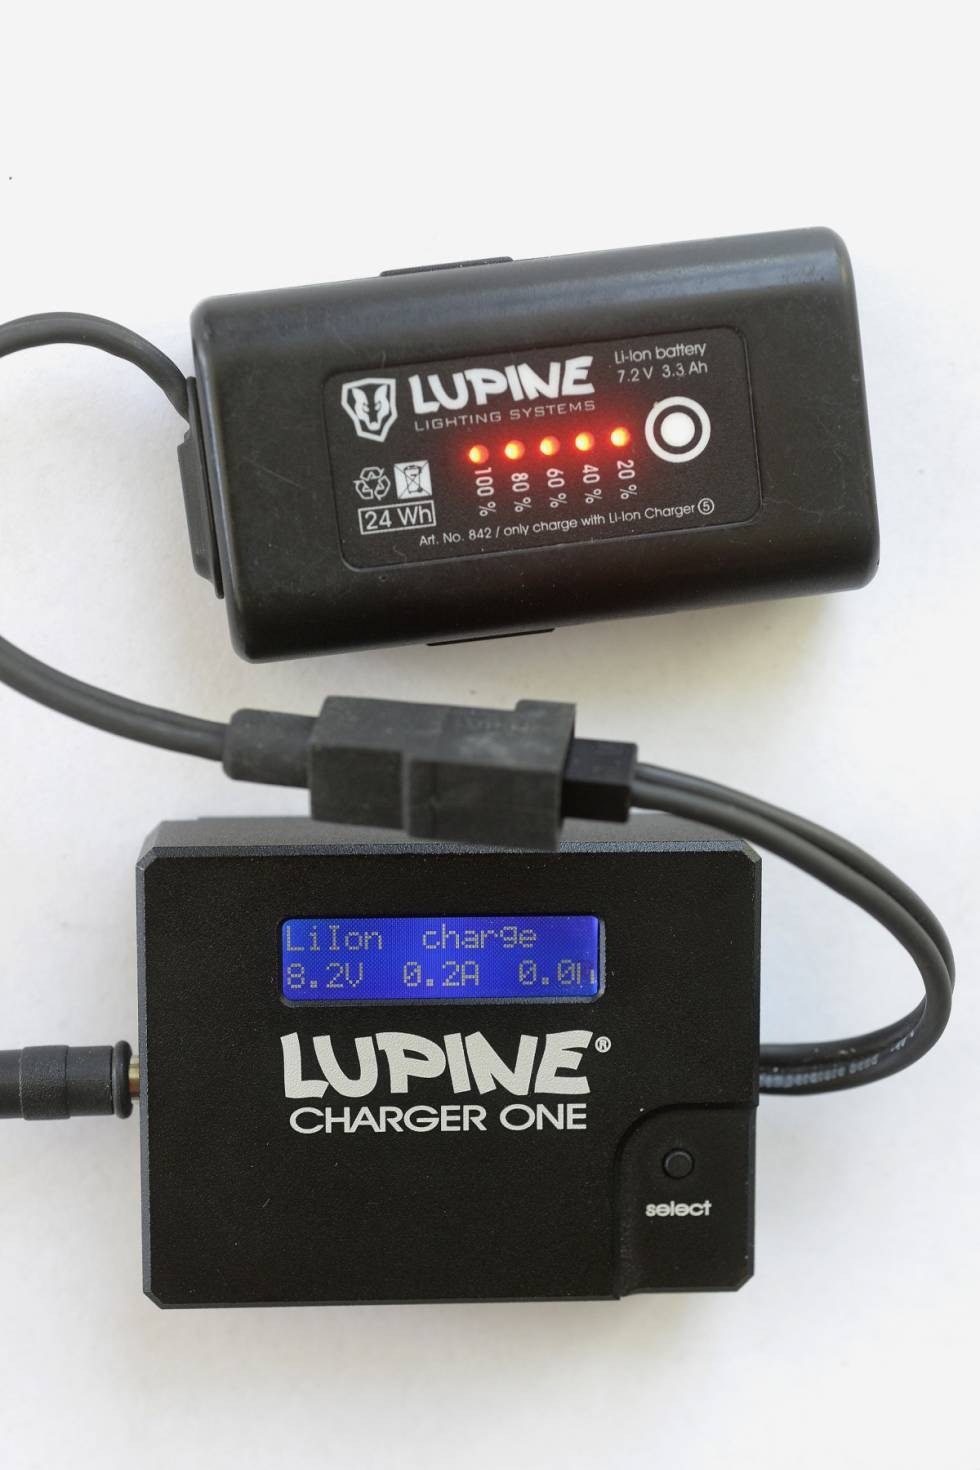 OMFATTENDE SYSTEM: Alle Lupines hodelykter er kompatible med et stort utvalg av batteristørrelser, kabler og ladere. Medfølgende batteri har reststrøm-indikator. Laderen ChargerOne (ekstrautstyr) er mer avansert enn standardladeren som følger med.